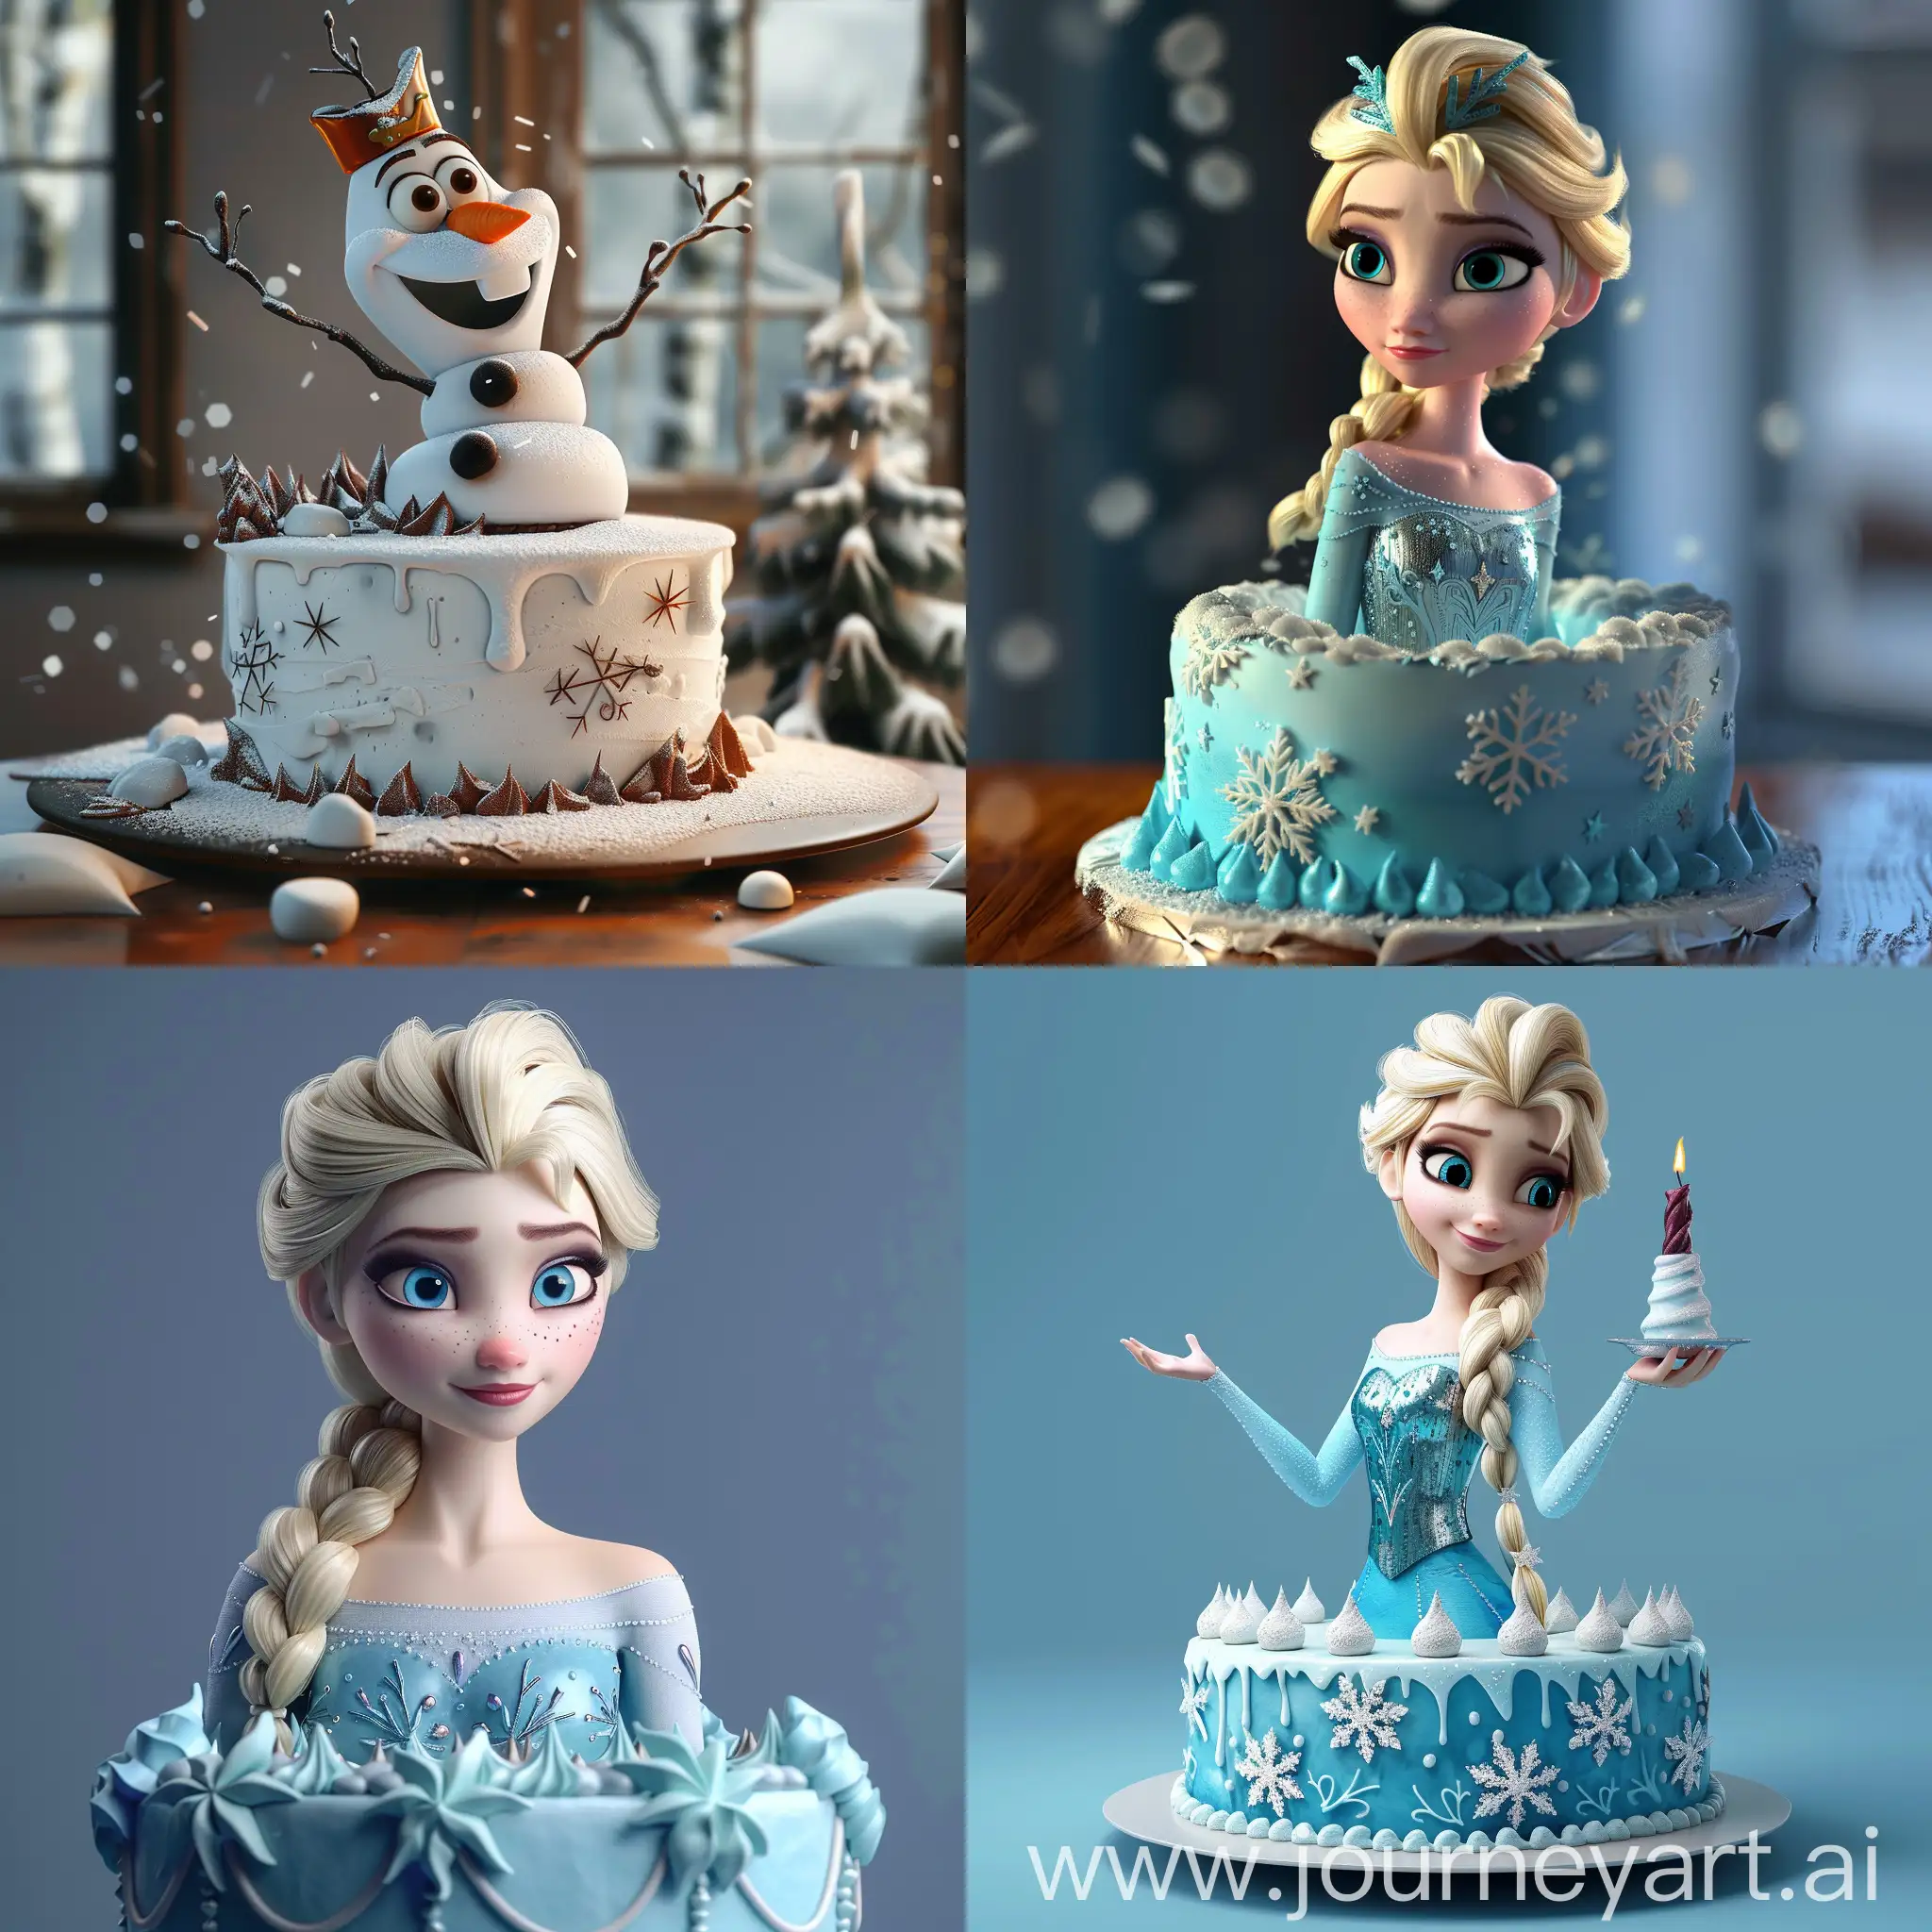 Frozen-Cake-3D-Animation-Stunning-Winter-Dessert-Sculpture